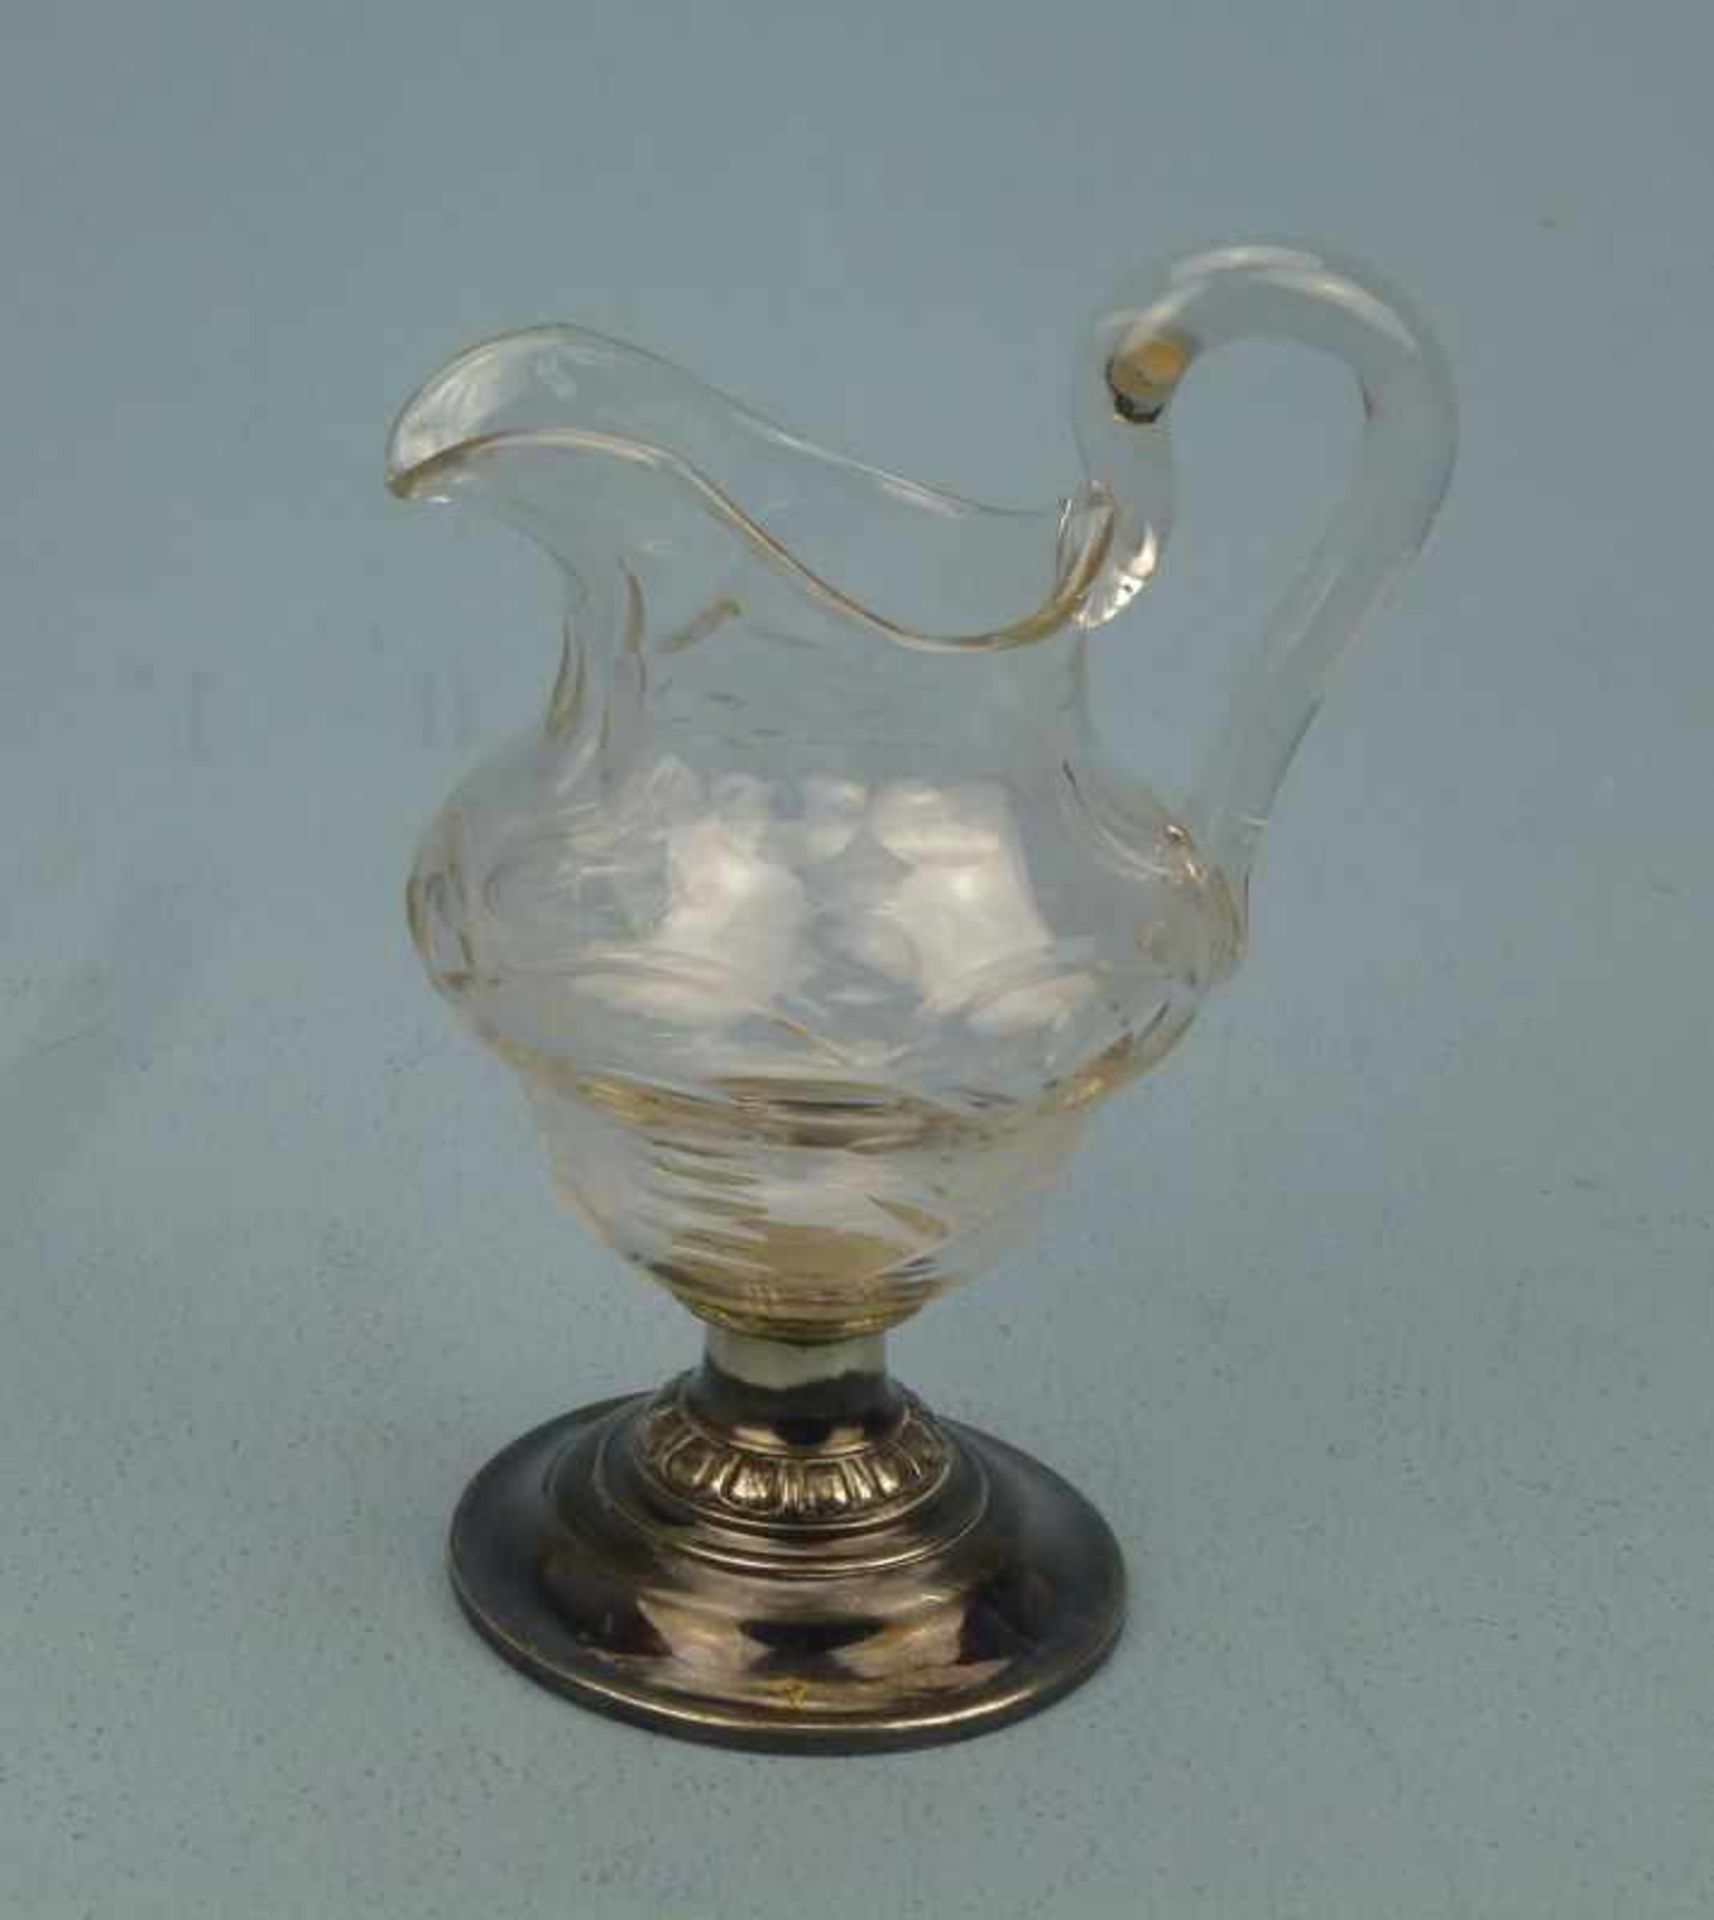 Rahmkännchen, um 1900 geschliffenes Glas, Fuß Silber, H 15cm